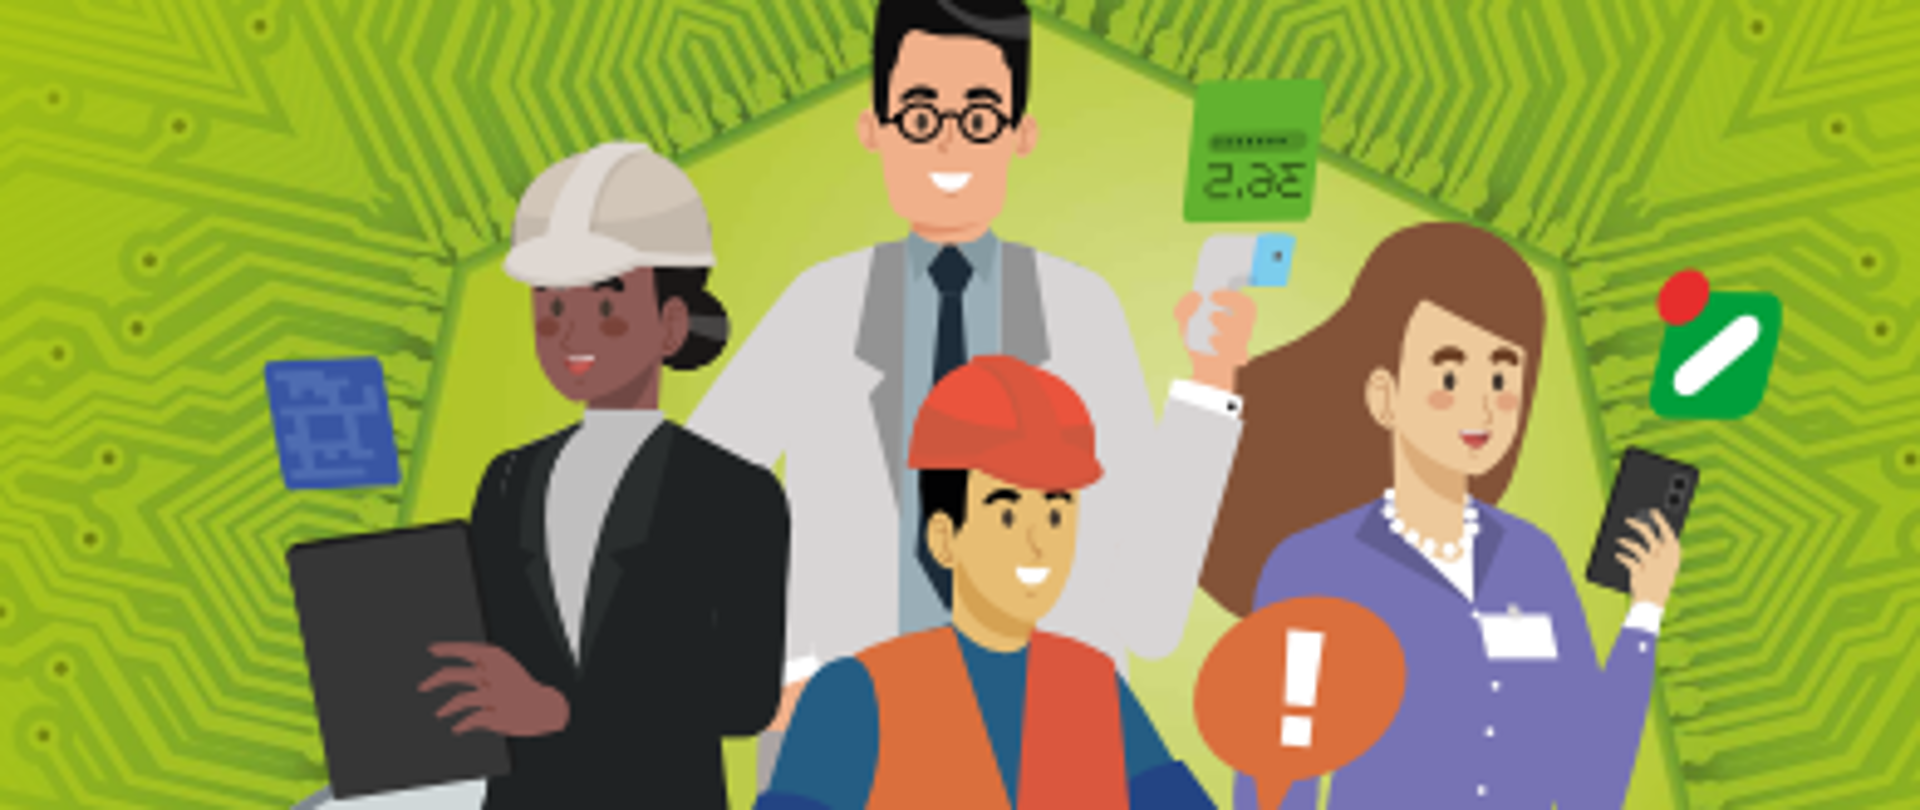 Plakat informacyjny "Zdrowe i bezpieczne miejsce pracy” - Kampania na lata 2023-2025, Tło zielone i w formie komiksowej postacie ludzi pracujących w różnych zawodach.